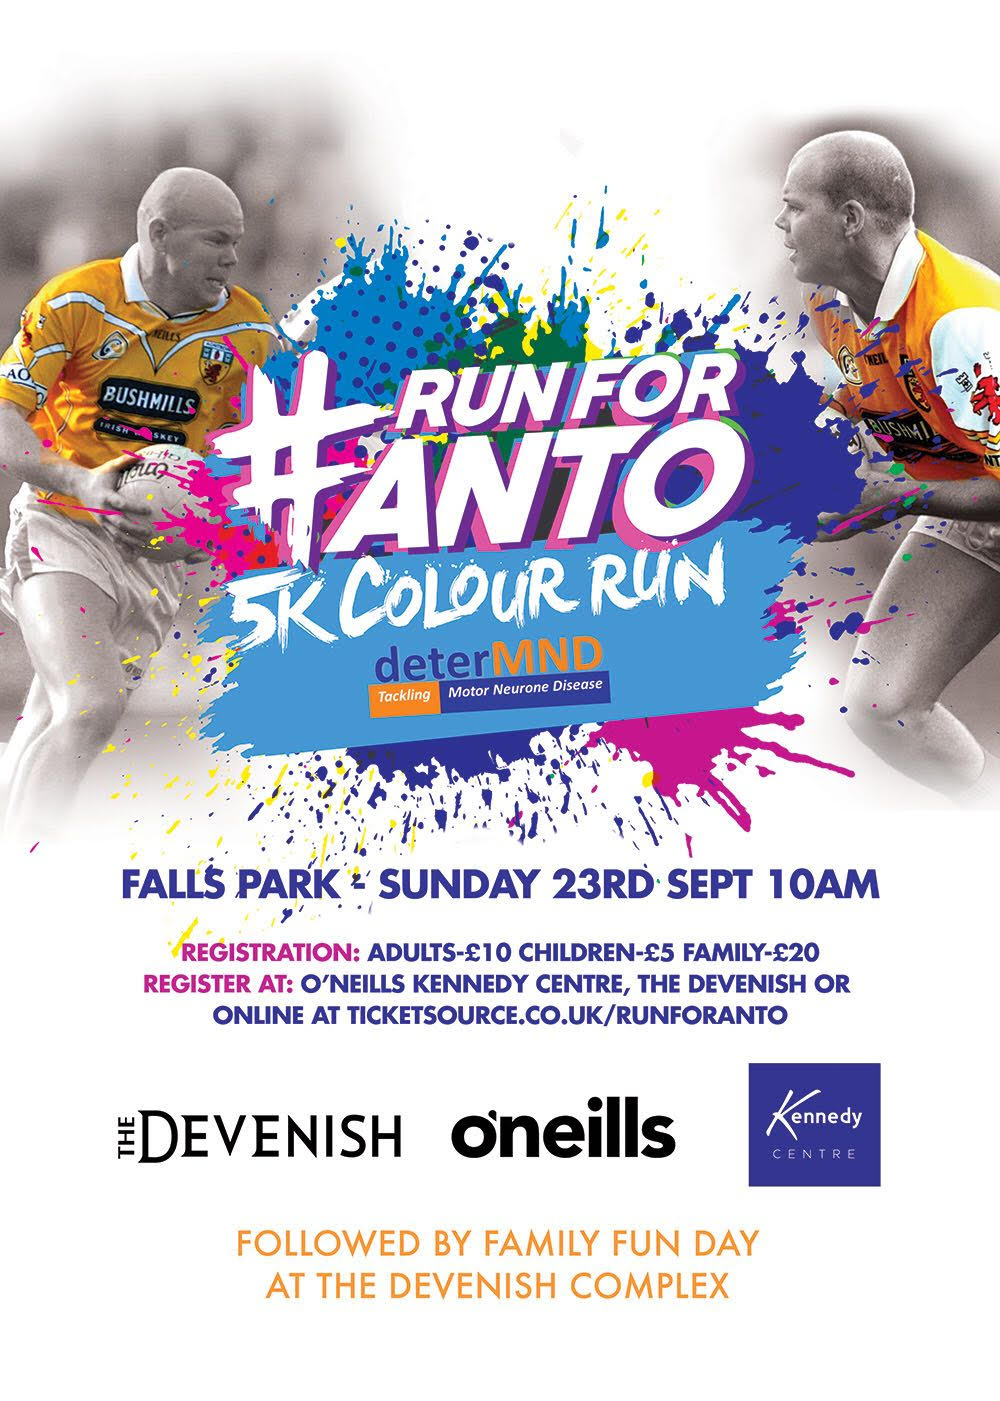 Register For The ‘Run For Anto’ On Sunday 23rd September!